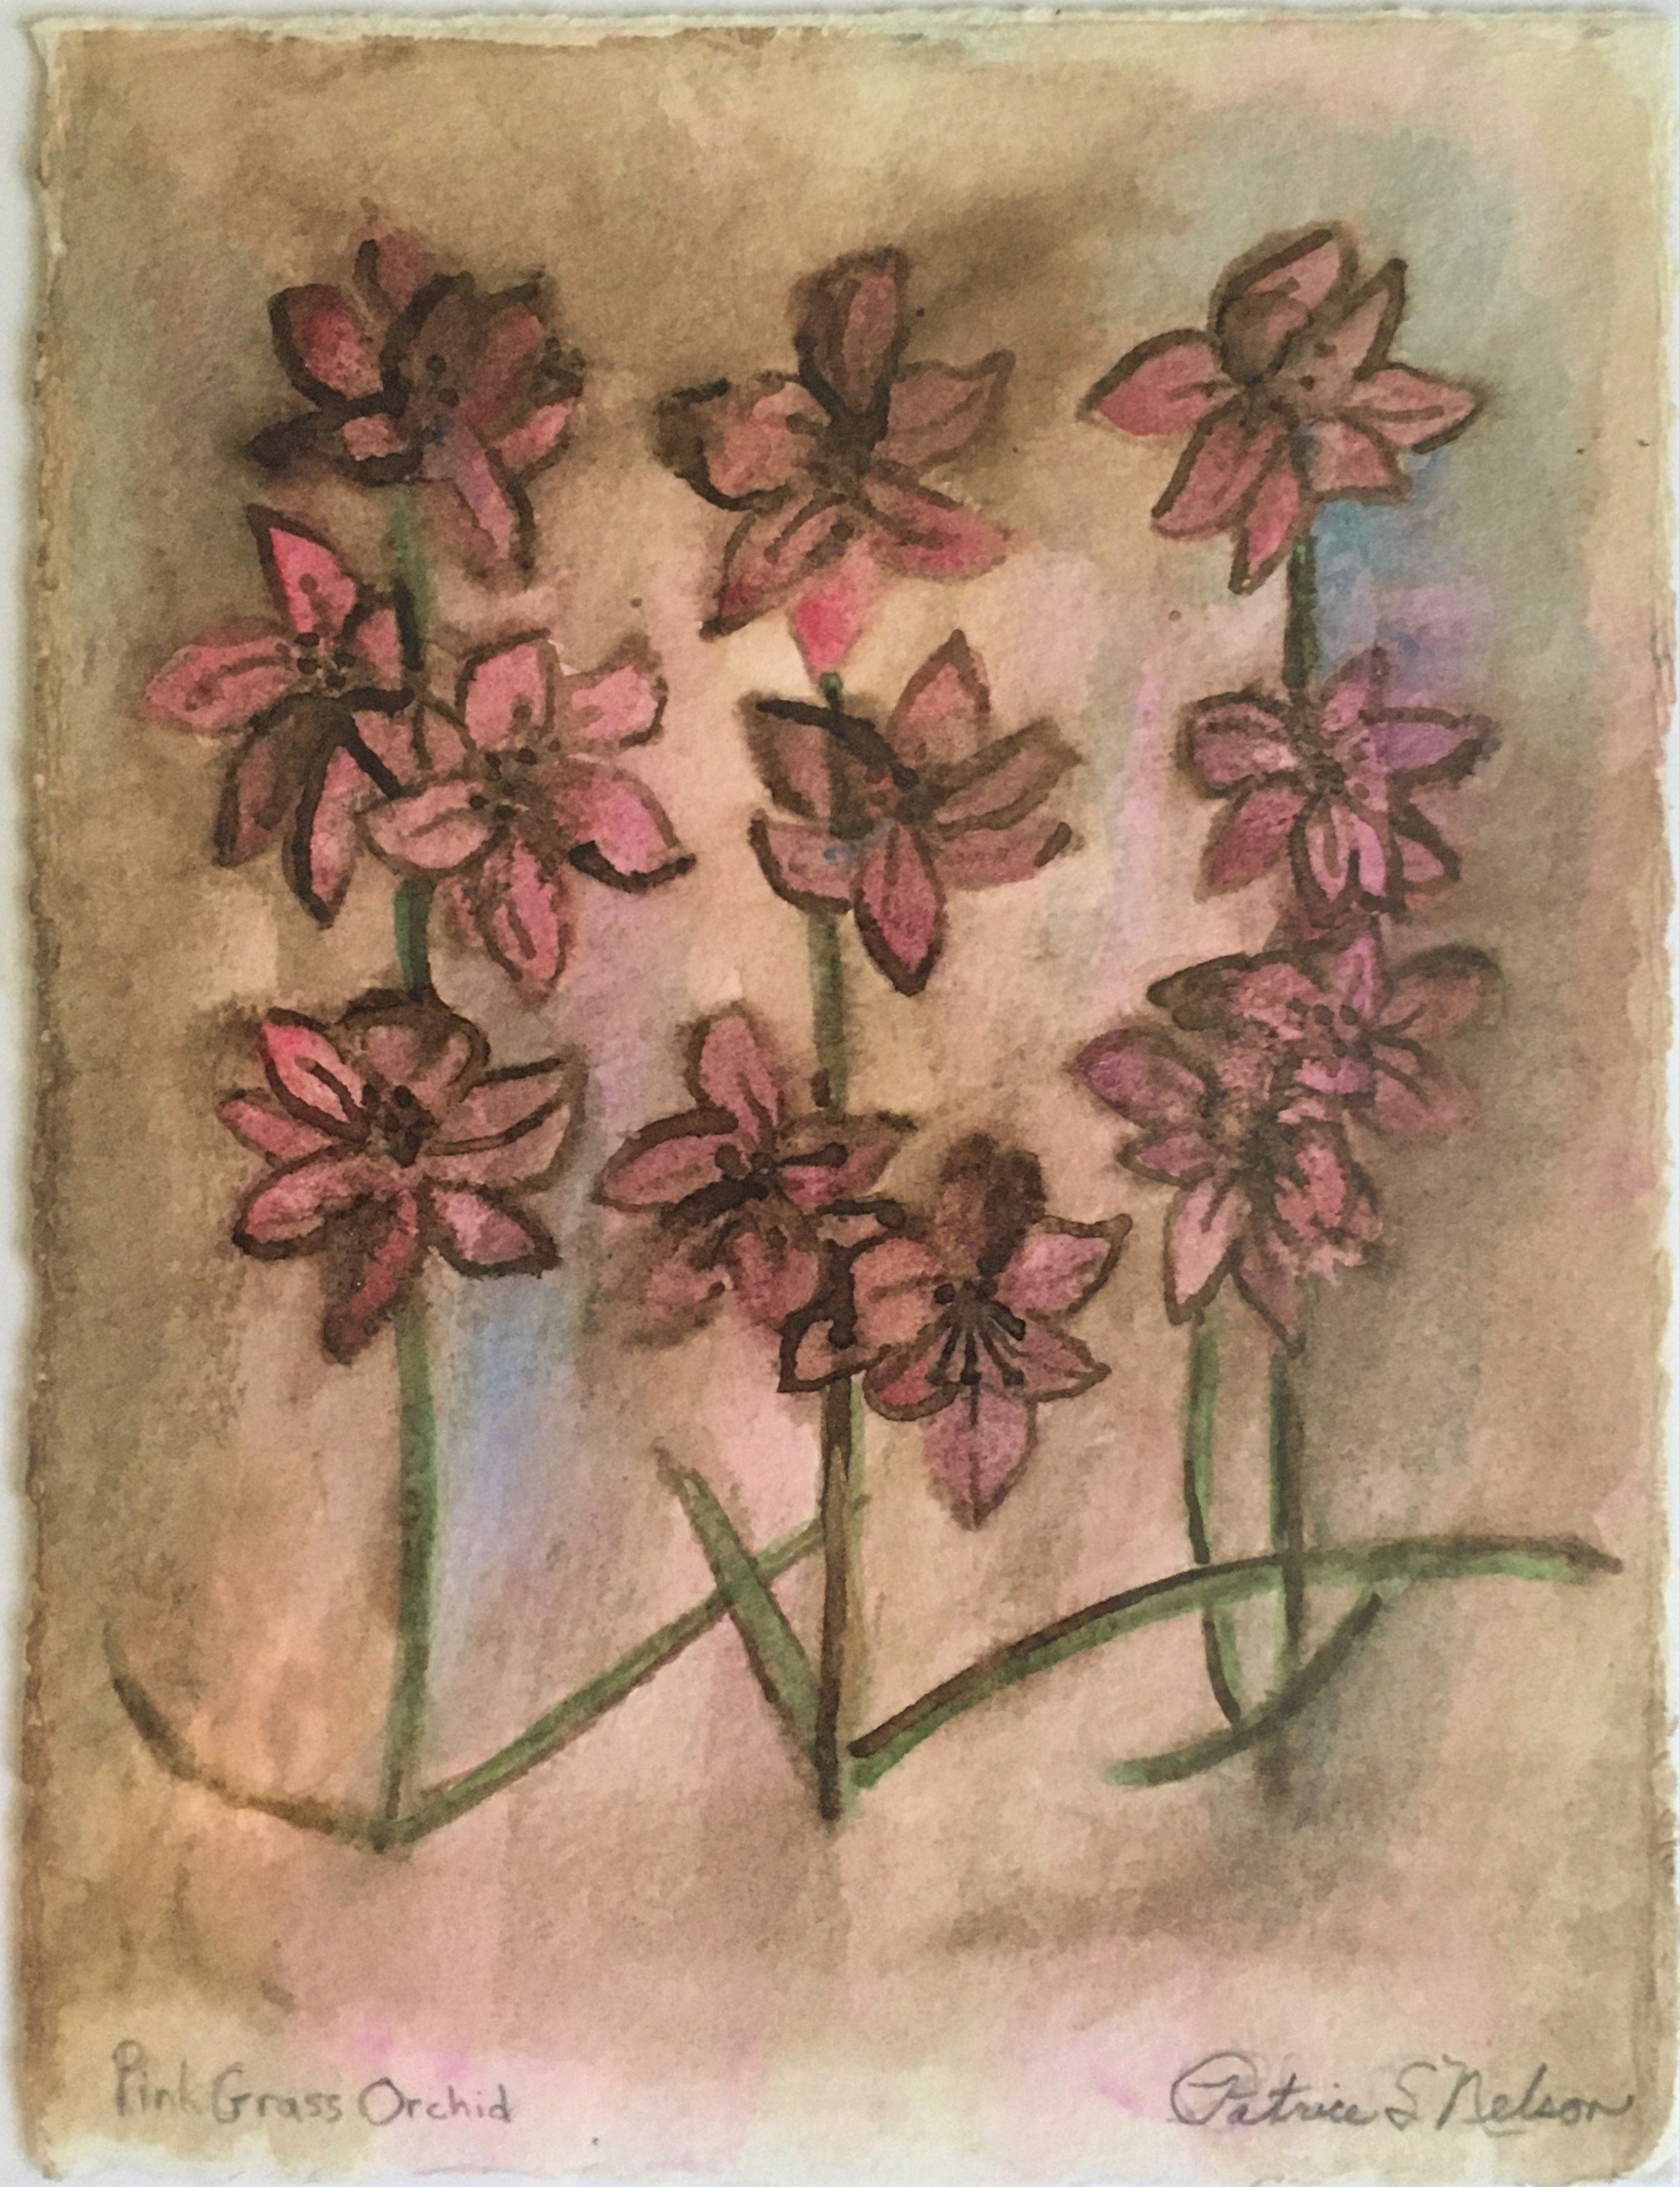 Pink Grass Orchid.JPG